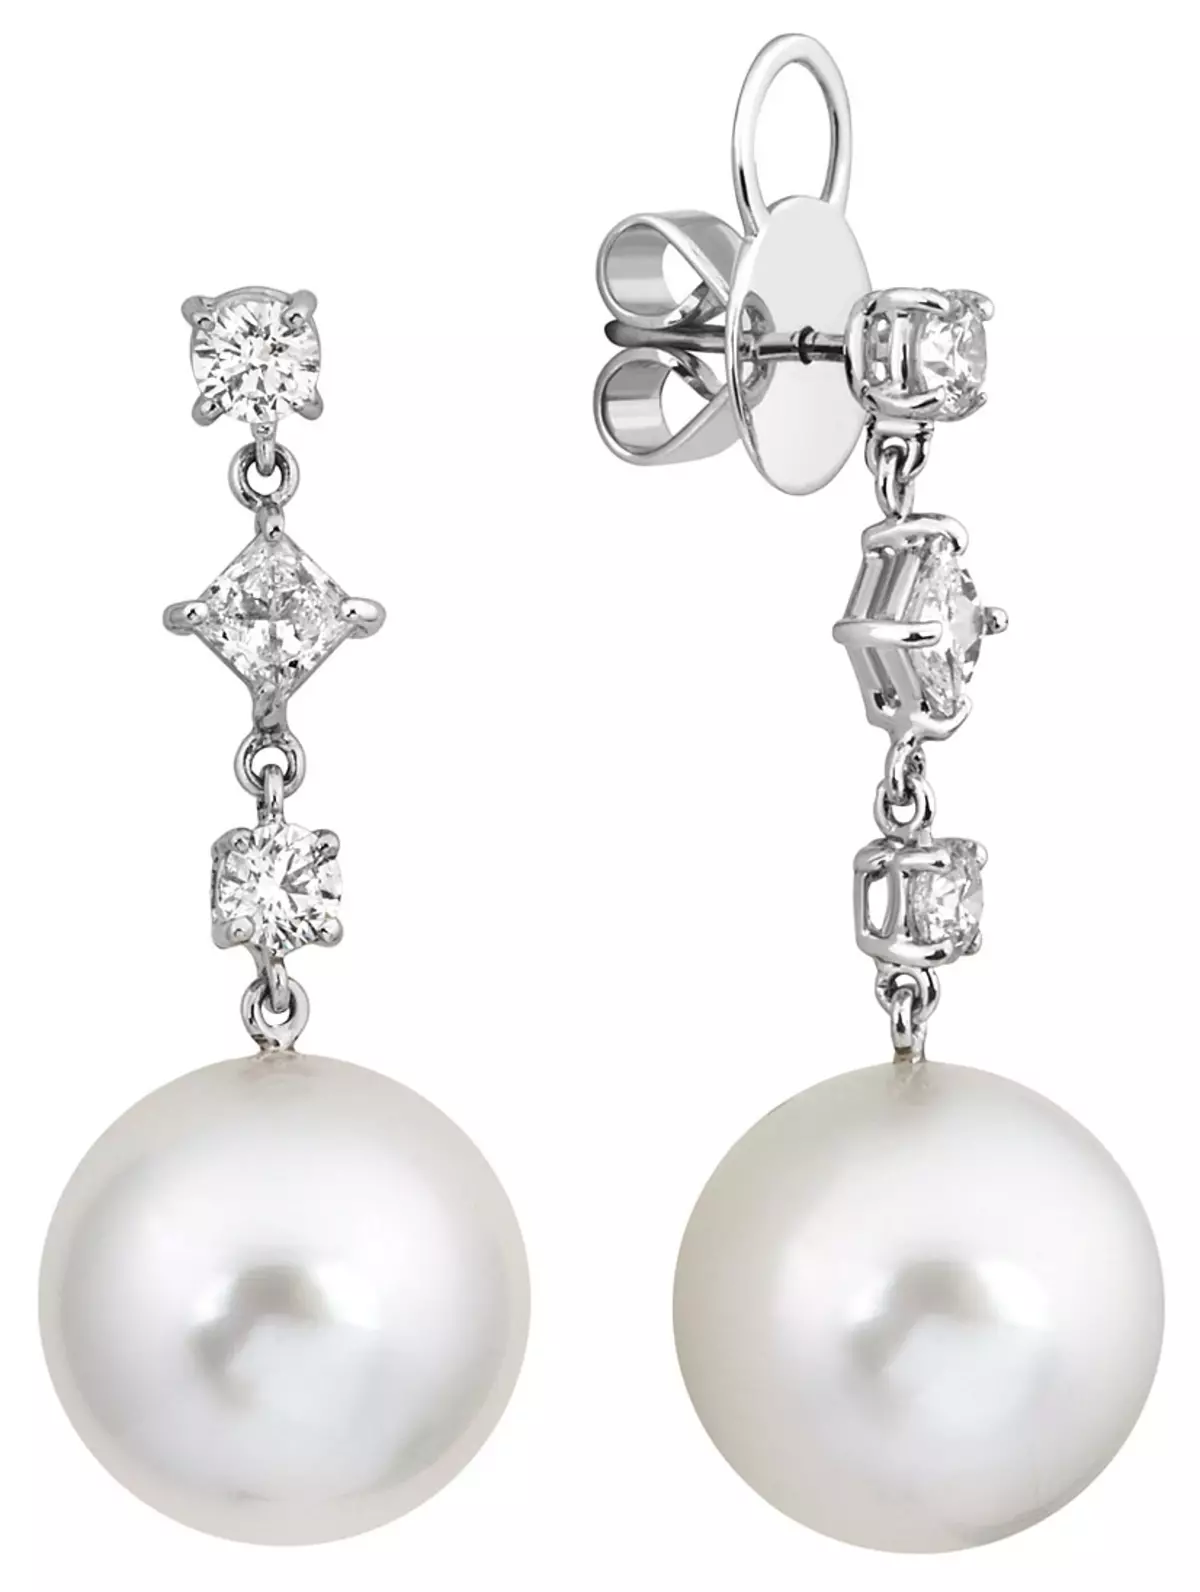 સફેદ સોનું earrings (85 ફોટા): નીલમ સાથે મોડેલ્સ, earrings મોતી સાથે અને પત્થરો વગર દબાણ કરે છે 3431_55